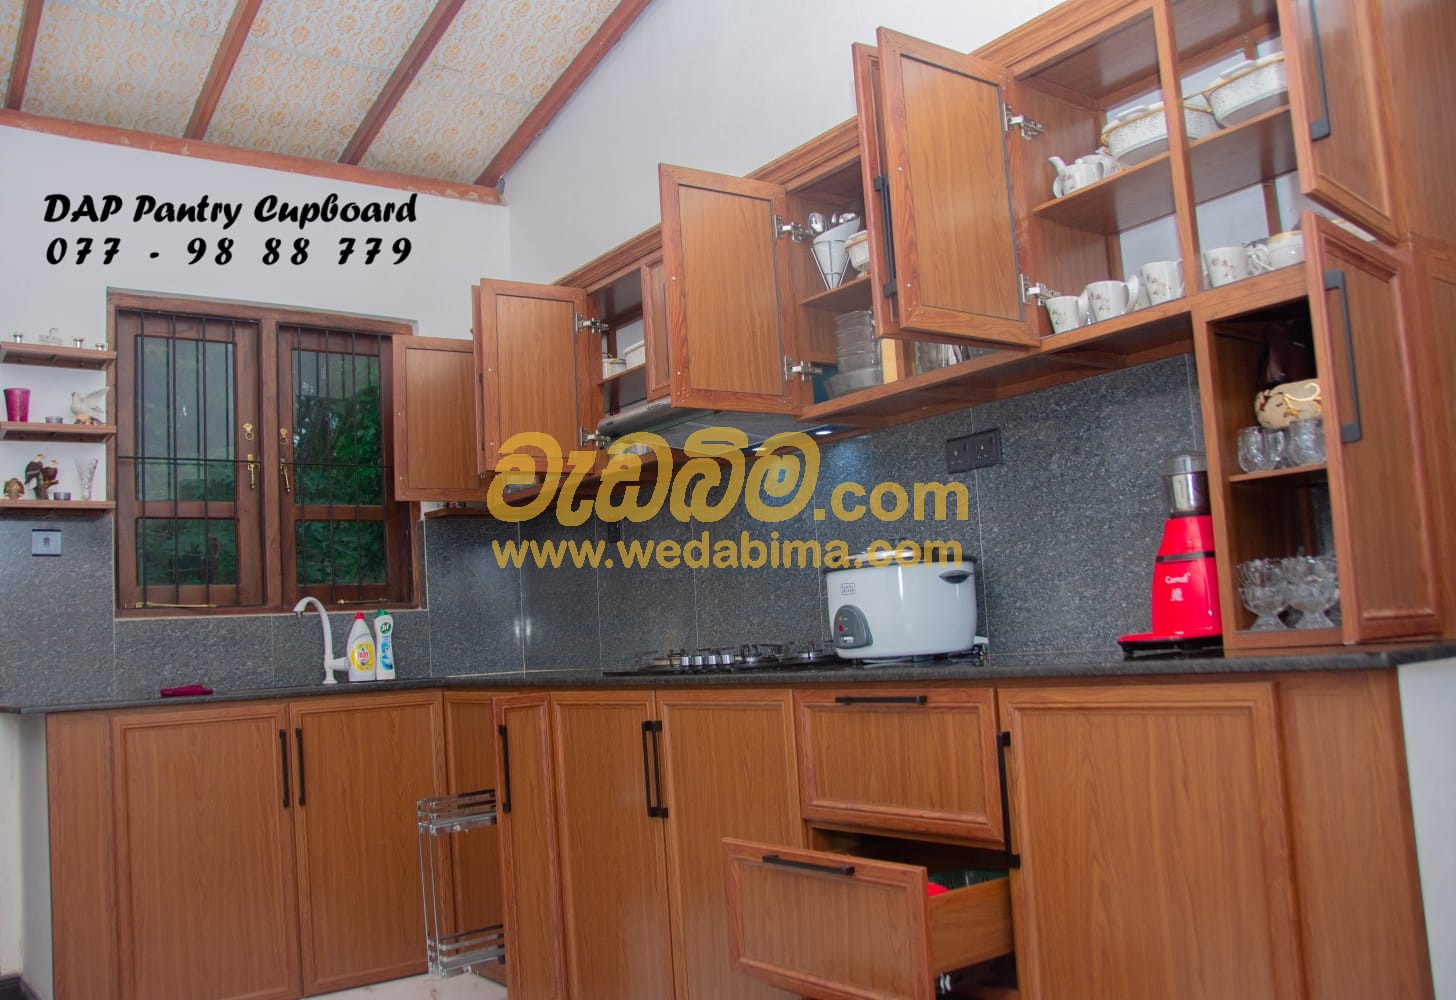 Cover image for hdx boards pantry cupboard price in sri lanka